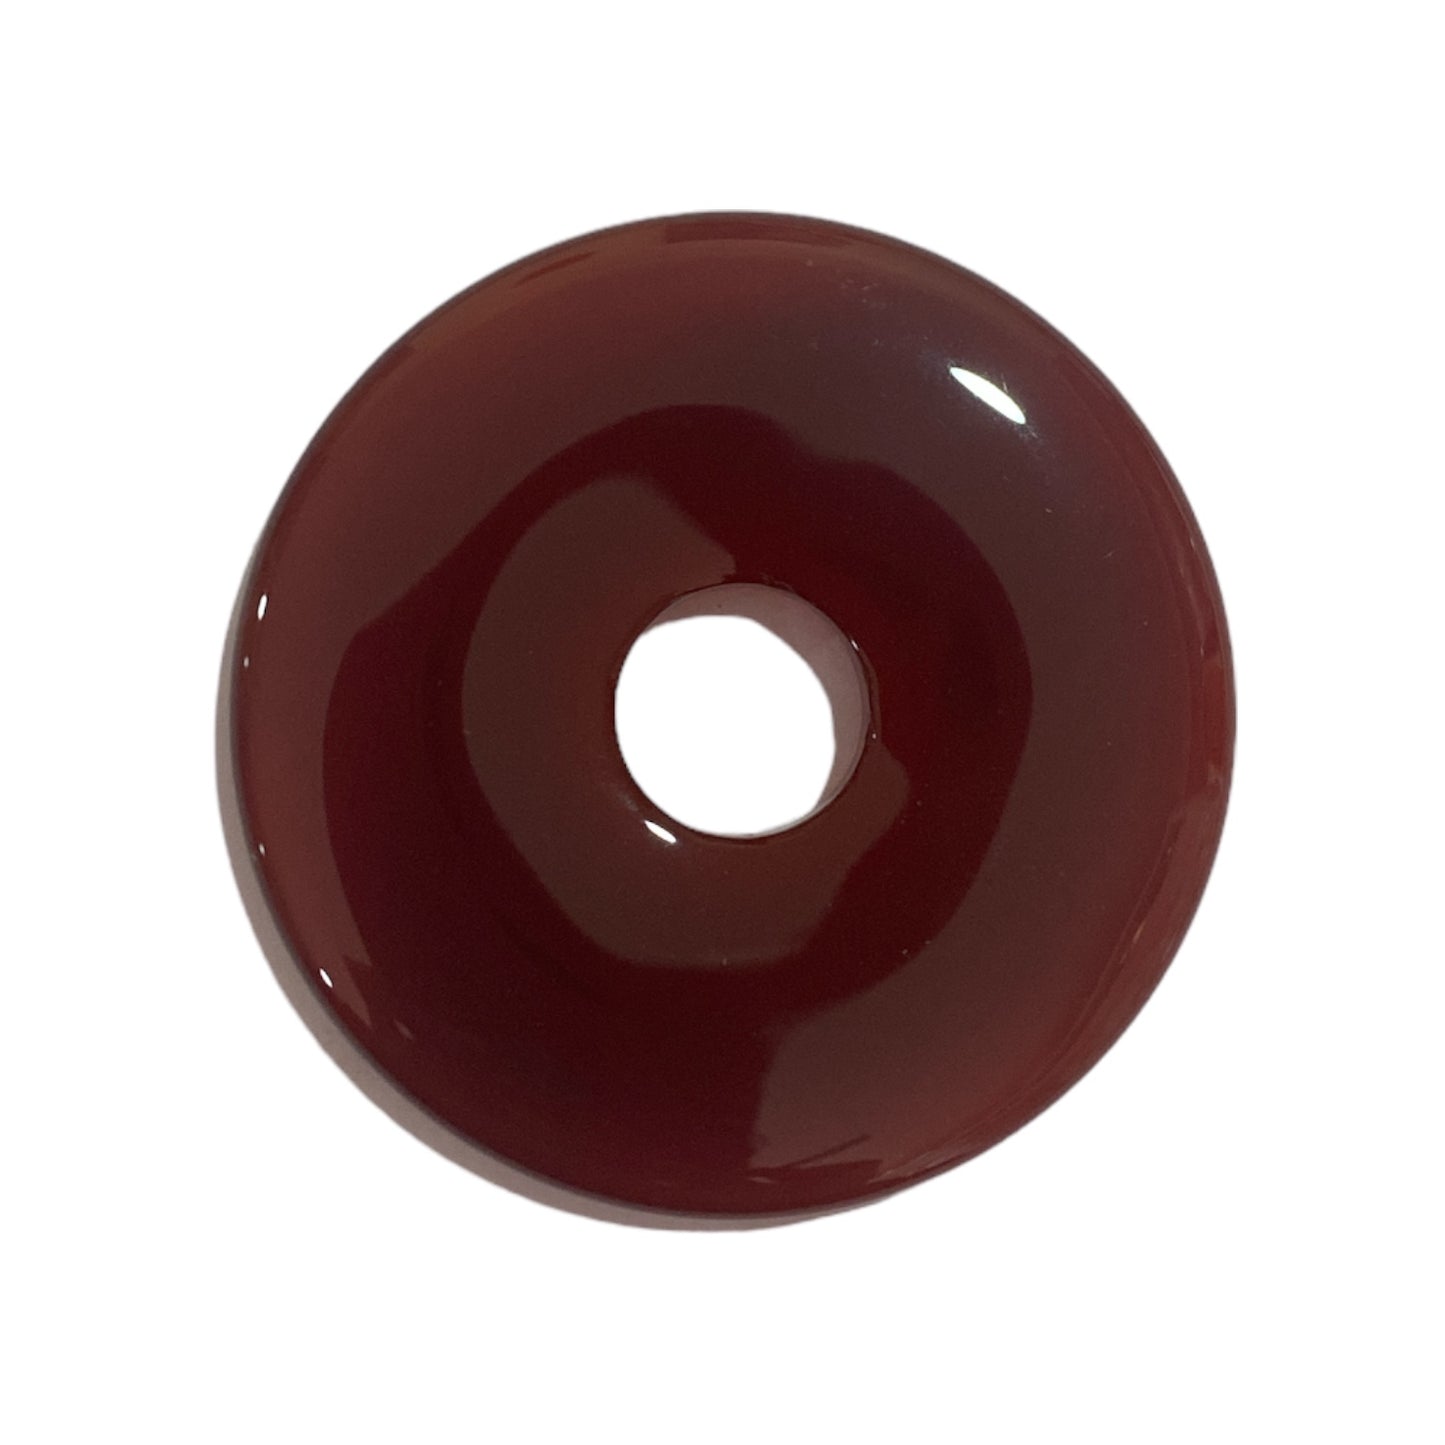 Carnelian Donut (Pi Stone) - 5cm